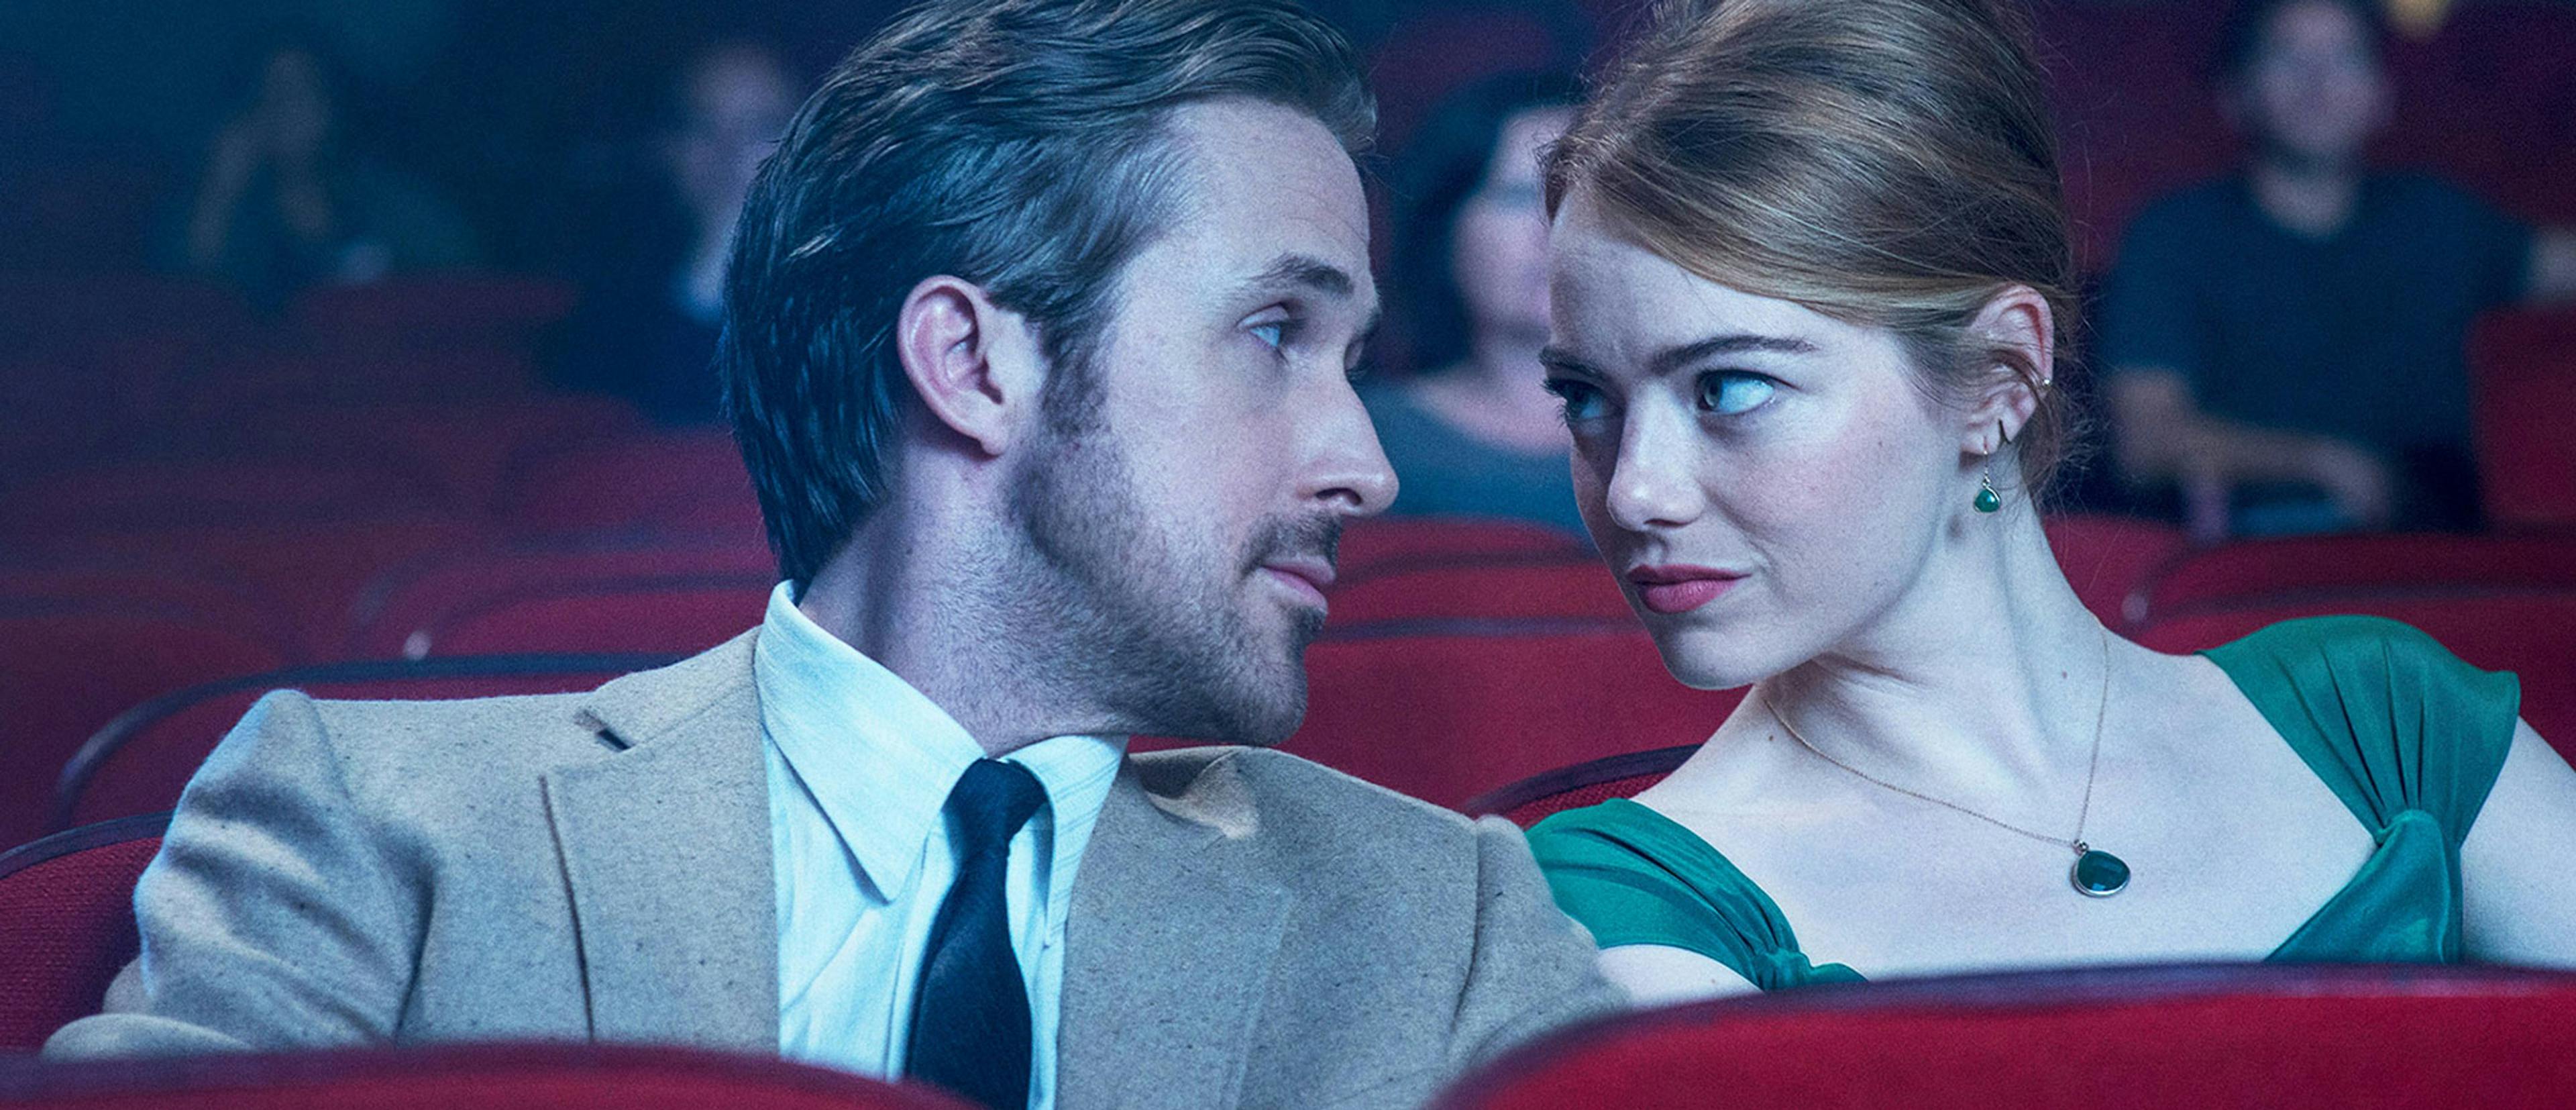 Los actores Ryan Gosling y Emma Stone se miran en el patio de butacas de un cine durante una escena de 'La La Land'